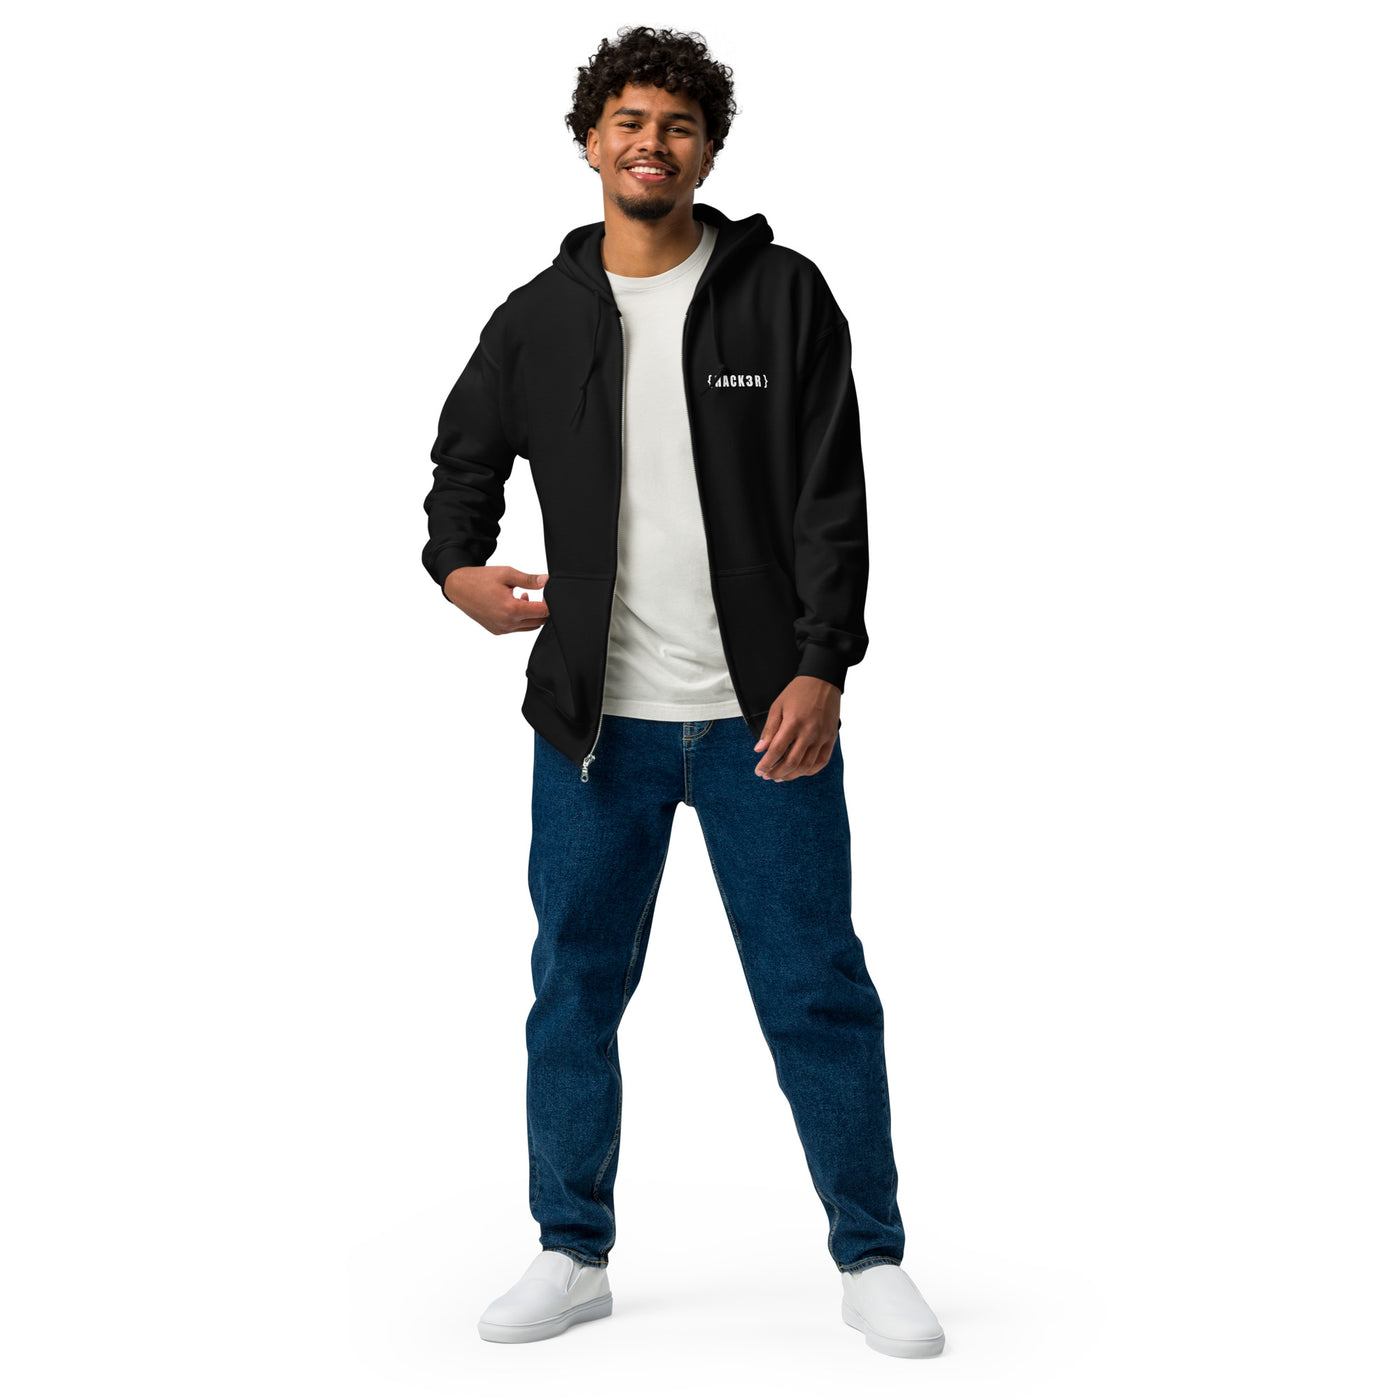 Hack3r - Unisex heavy blend zip hoodie